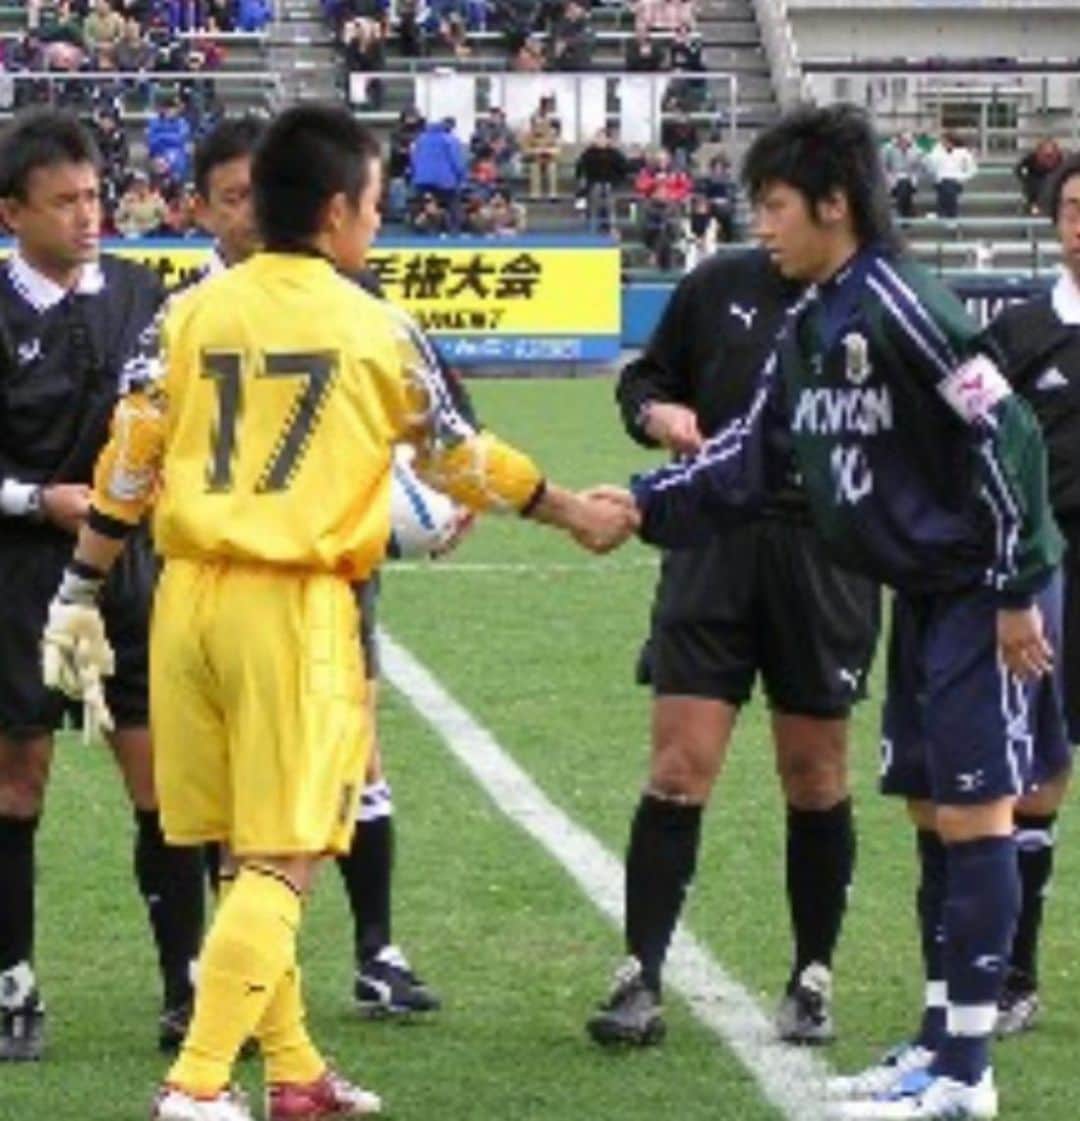 畑喜美夫のインスタグラム：「第102回全国高校サッカー選手権大会の組み合わせが決定しました。 開幕戦は初出場同士の早稲田実業vs広島国際学院！ 痺れますねー！  僕の監督時代（広島観音高校）は2002年、2005年、2009年と出場して初出場でベスト16、ベスト8、ベスト8でした‼️  インターハイでは日本一を勝ち取れましたが、選手権では後一歩及ばず！ しかし選手主導のボトムアップ型で挑み、価値ある成果だったと思います！  広島国際学院にはトレーナーの原君が教え子になるのでしっかり選手をサポートしてワクワク楽しんで大会に挑んでほしいです！  今年も目が離せない戦いが楽しみです‼️  選手達の最高最幸の自分発振にワクワクして皆様の健闘を希望します‼️  #ボトムアップ  #ボトムアップ理論  #畑喜美夫  #畑喜美夫先生  #ボトムアップパーソンズ協会  #ボトムアップパーソンズ  #みんなが主役  #みんなで成長  #初出場  #マネジメント  #リーダー  #リーダーシップ #広島観音高校  #人間力  #セミナー  #講演会  #広島観音高校サッカー部  #広島国際学院高校サッカー部  #全員リーダー制 #instagram  #可能性  #全国高校サッカー選手権大会  #発見」